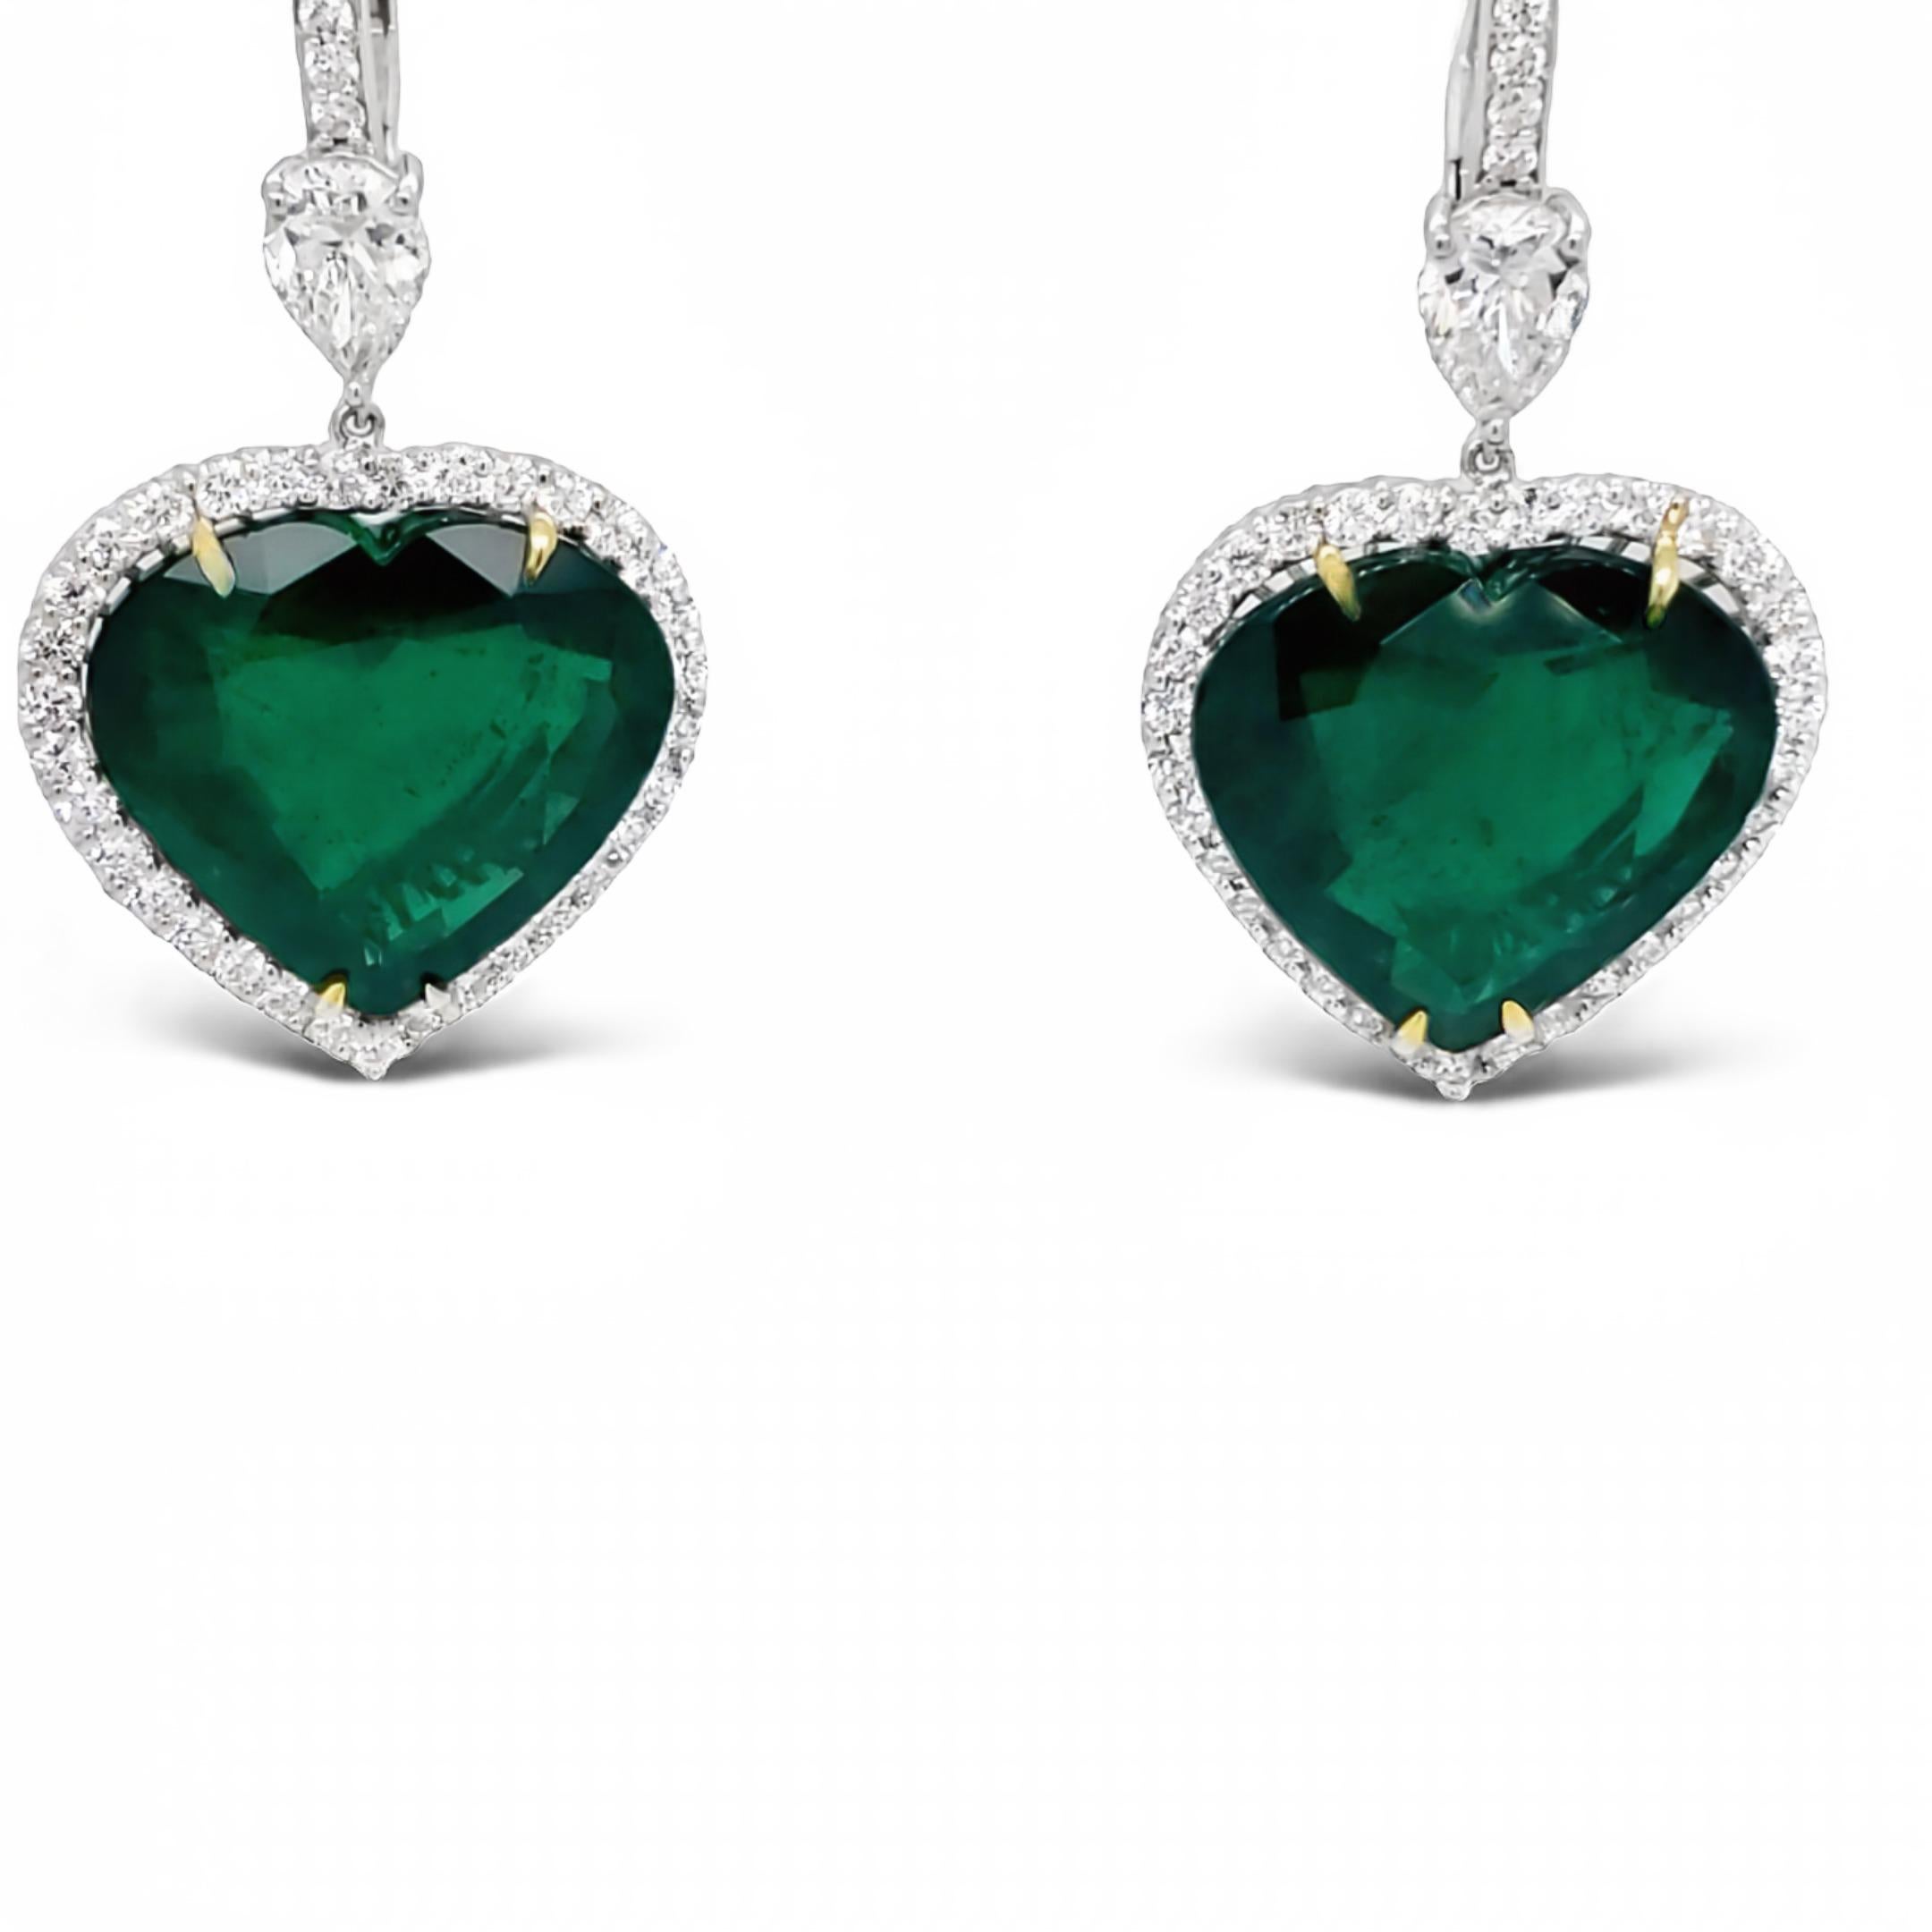 David Rosenberg 30.36 Carat Heart Shape Green Zambian Emerald Diamond Earrings In New Condition For Sale In Boca Raton, FL